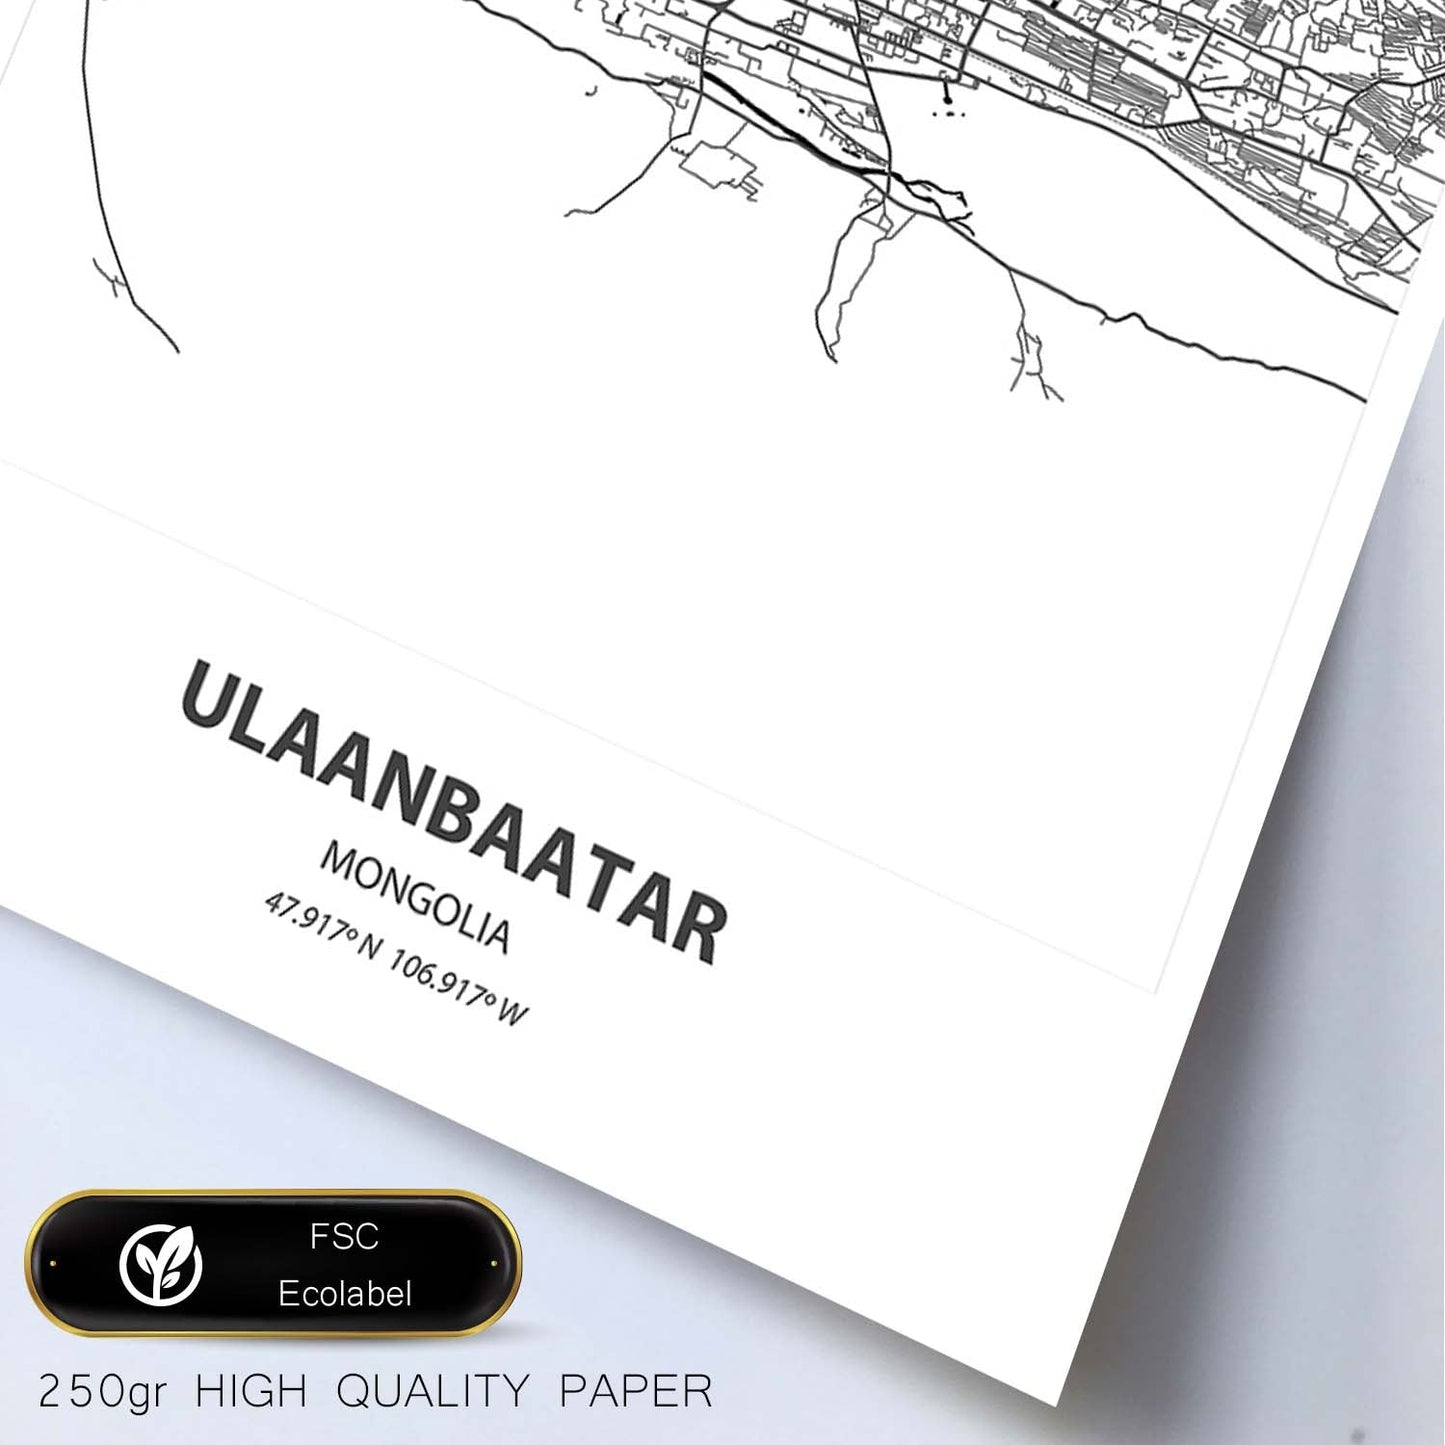 Poster con mapa de Ulaanbaatar - Mongolia. Láminas de ciudades de Asia con mares y ríos en color negro.-Artwork-Nacnic-Nacnic Estudio SL